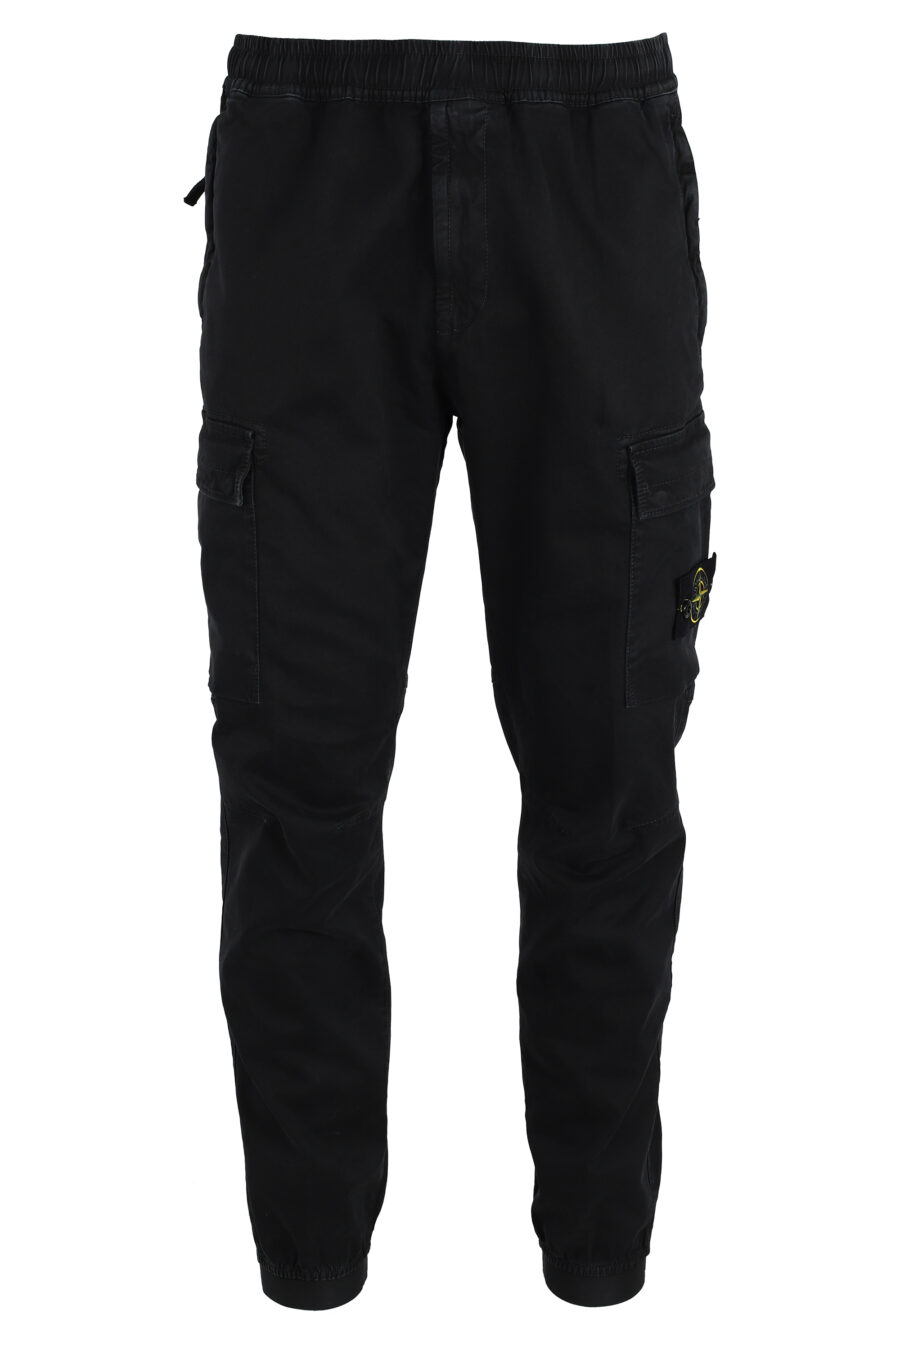 Pantalón negro estilo cargo con parche lateral - IMG 4798